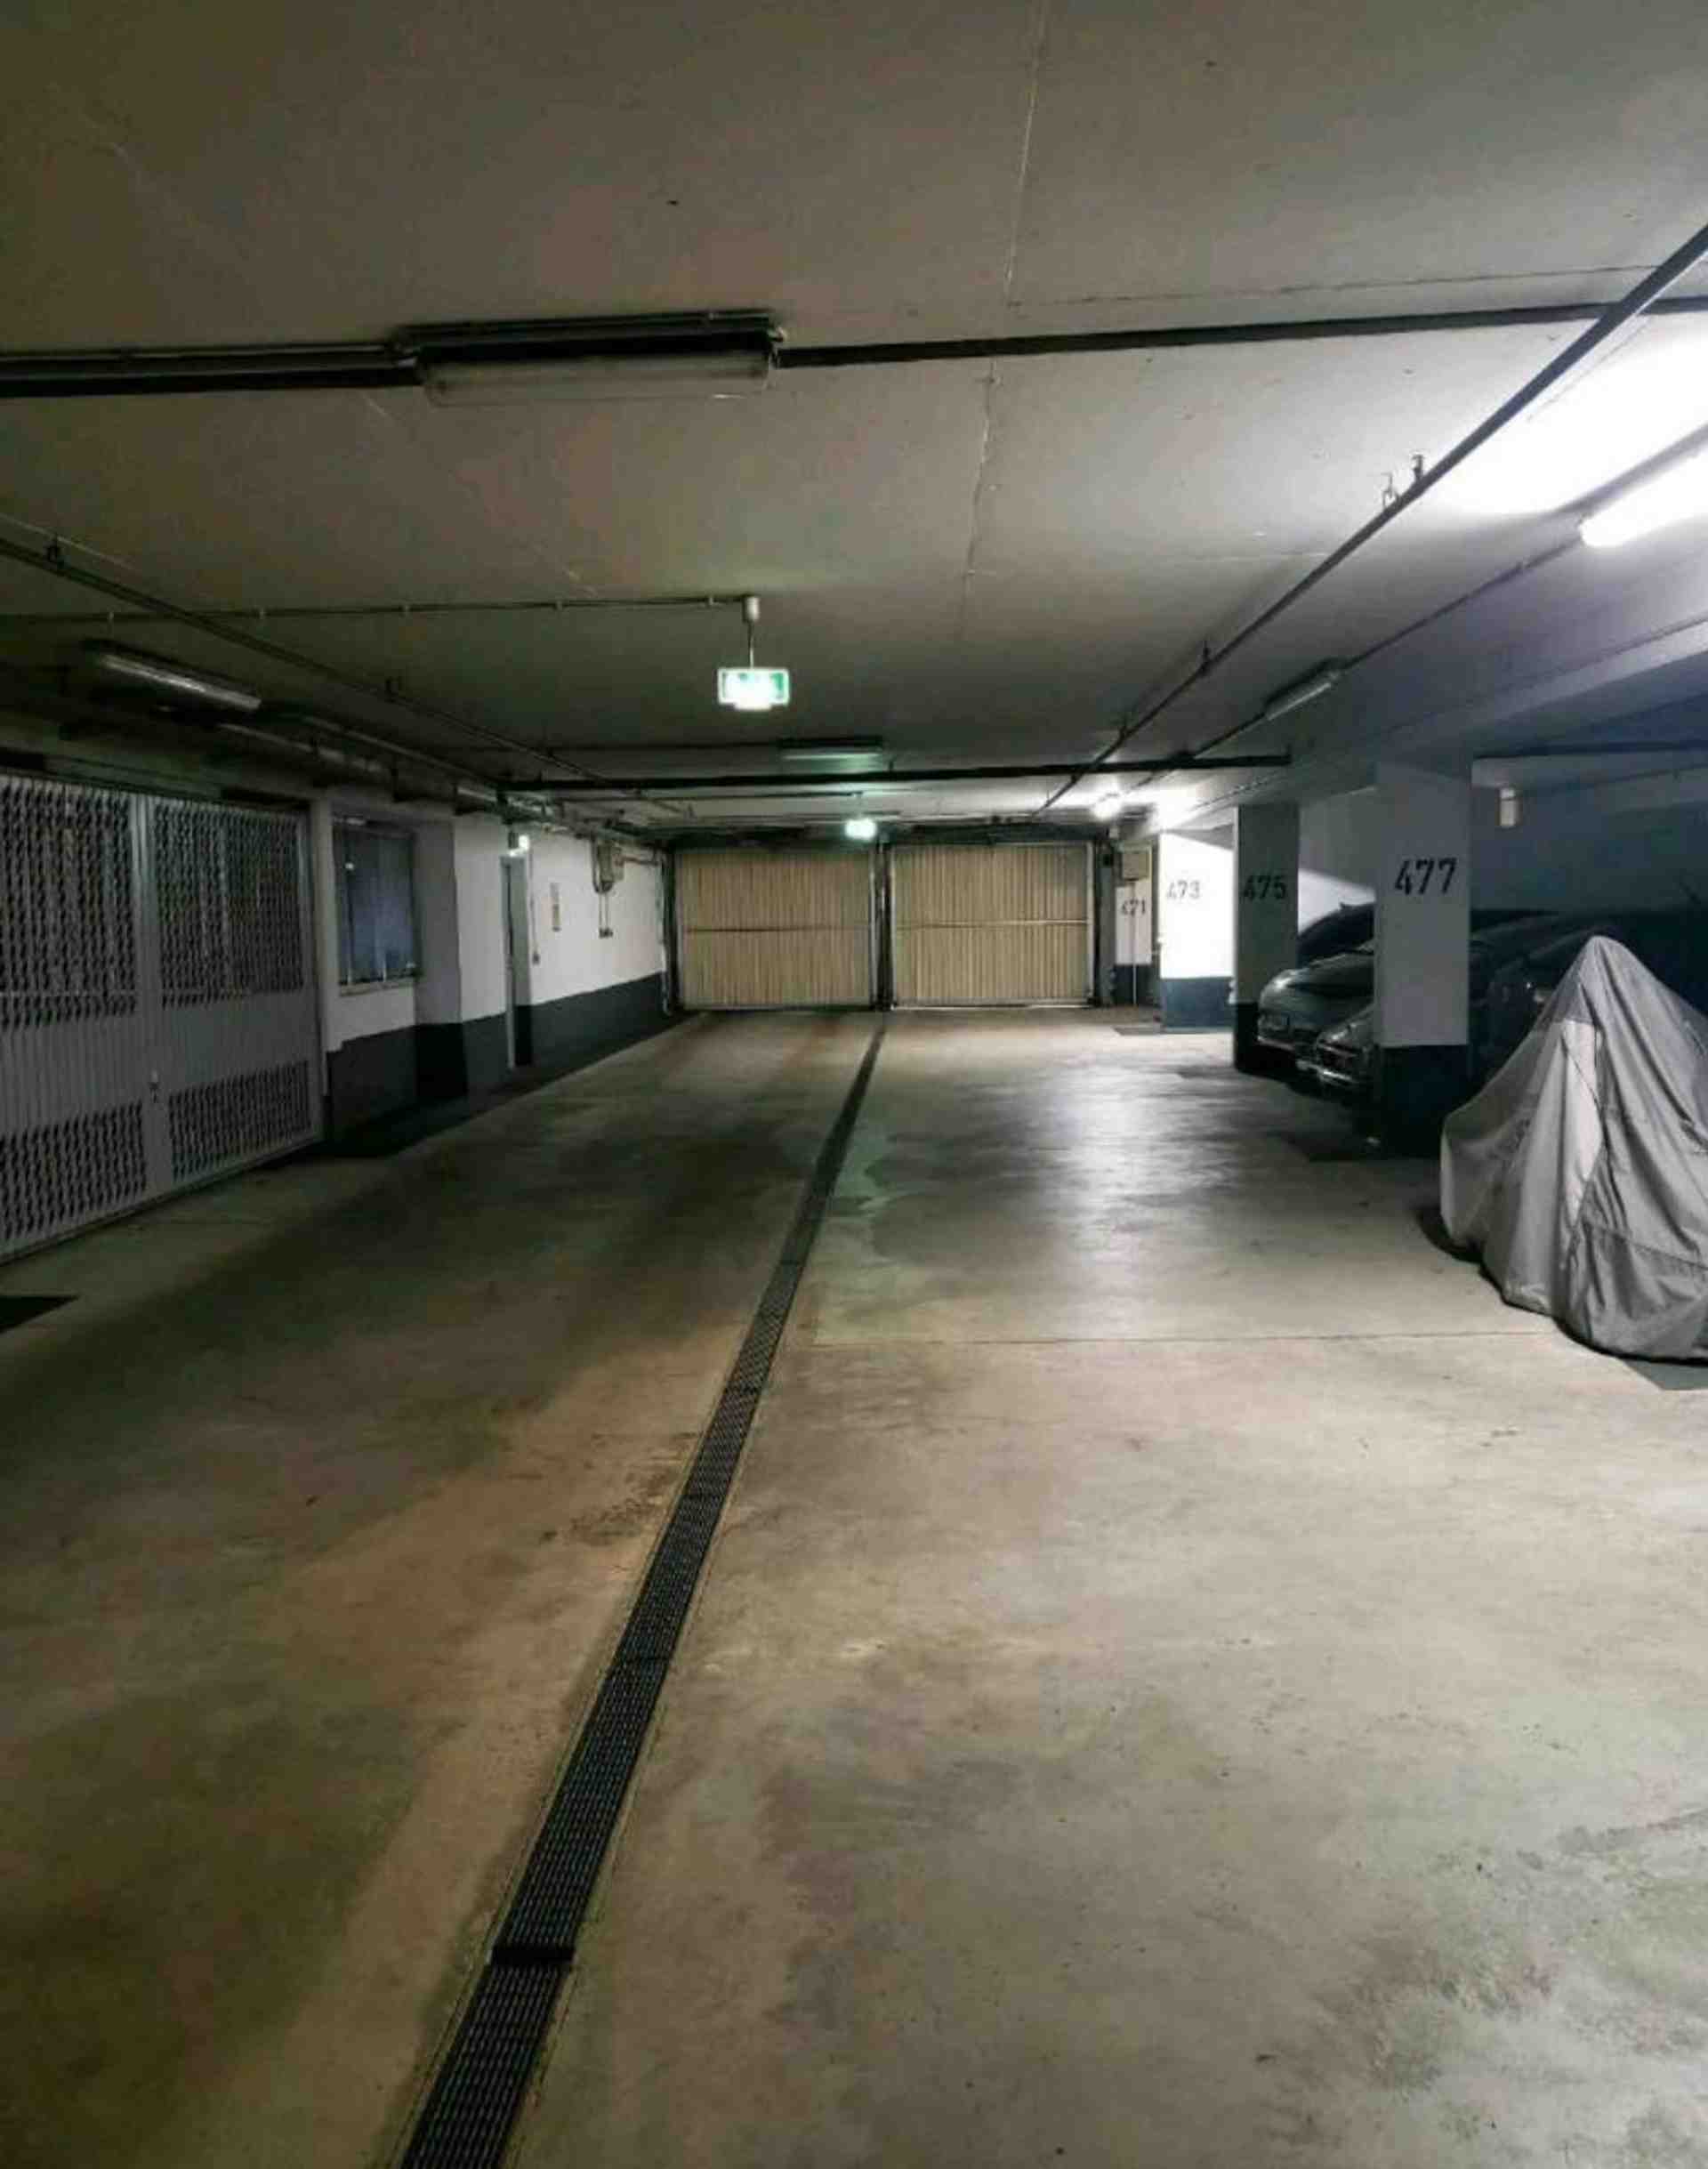 Underground parking space Daphnestraße - Daphnestraße, 81925 Munich - Photo 2 of 4